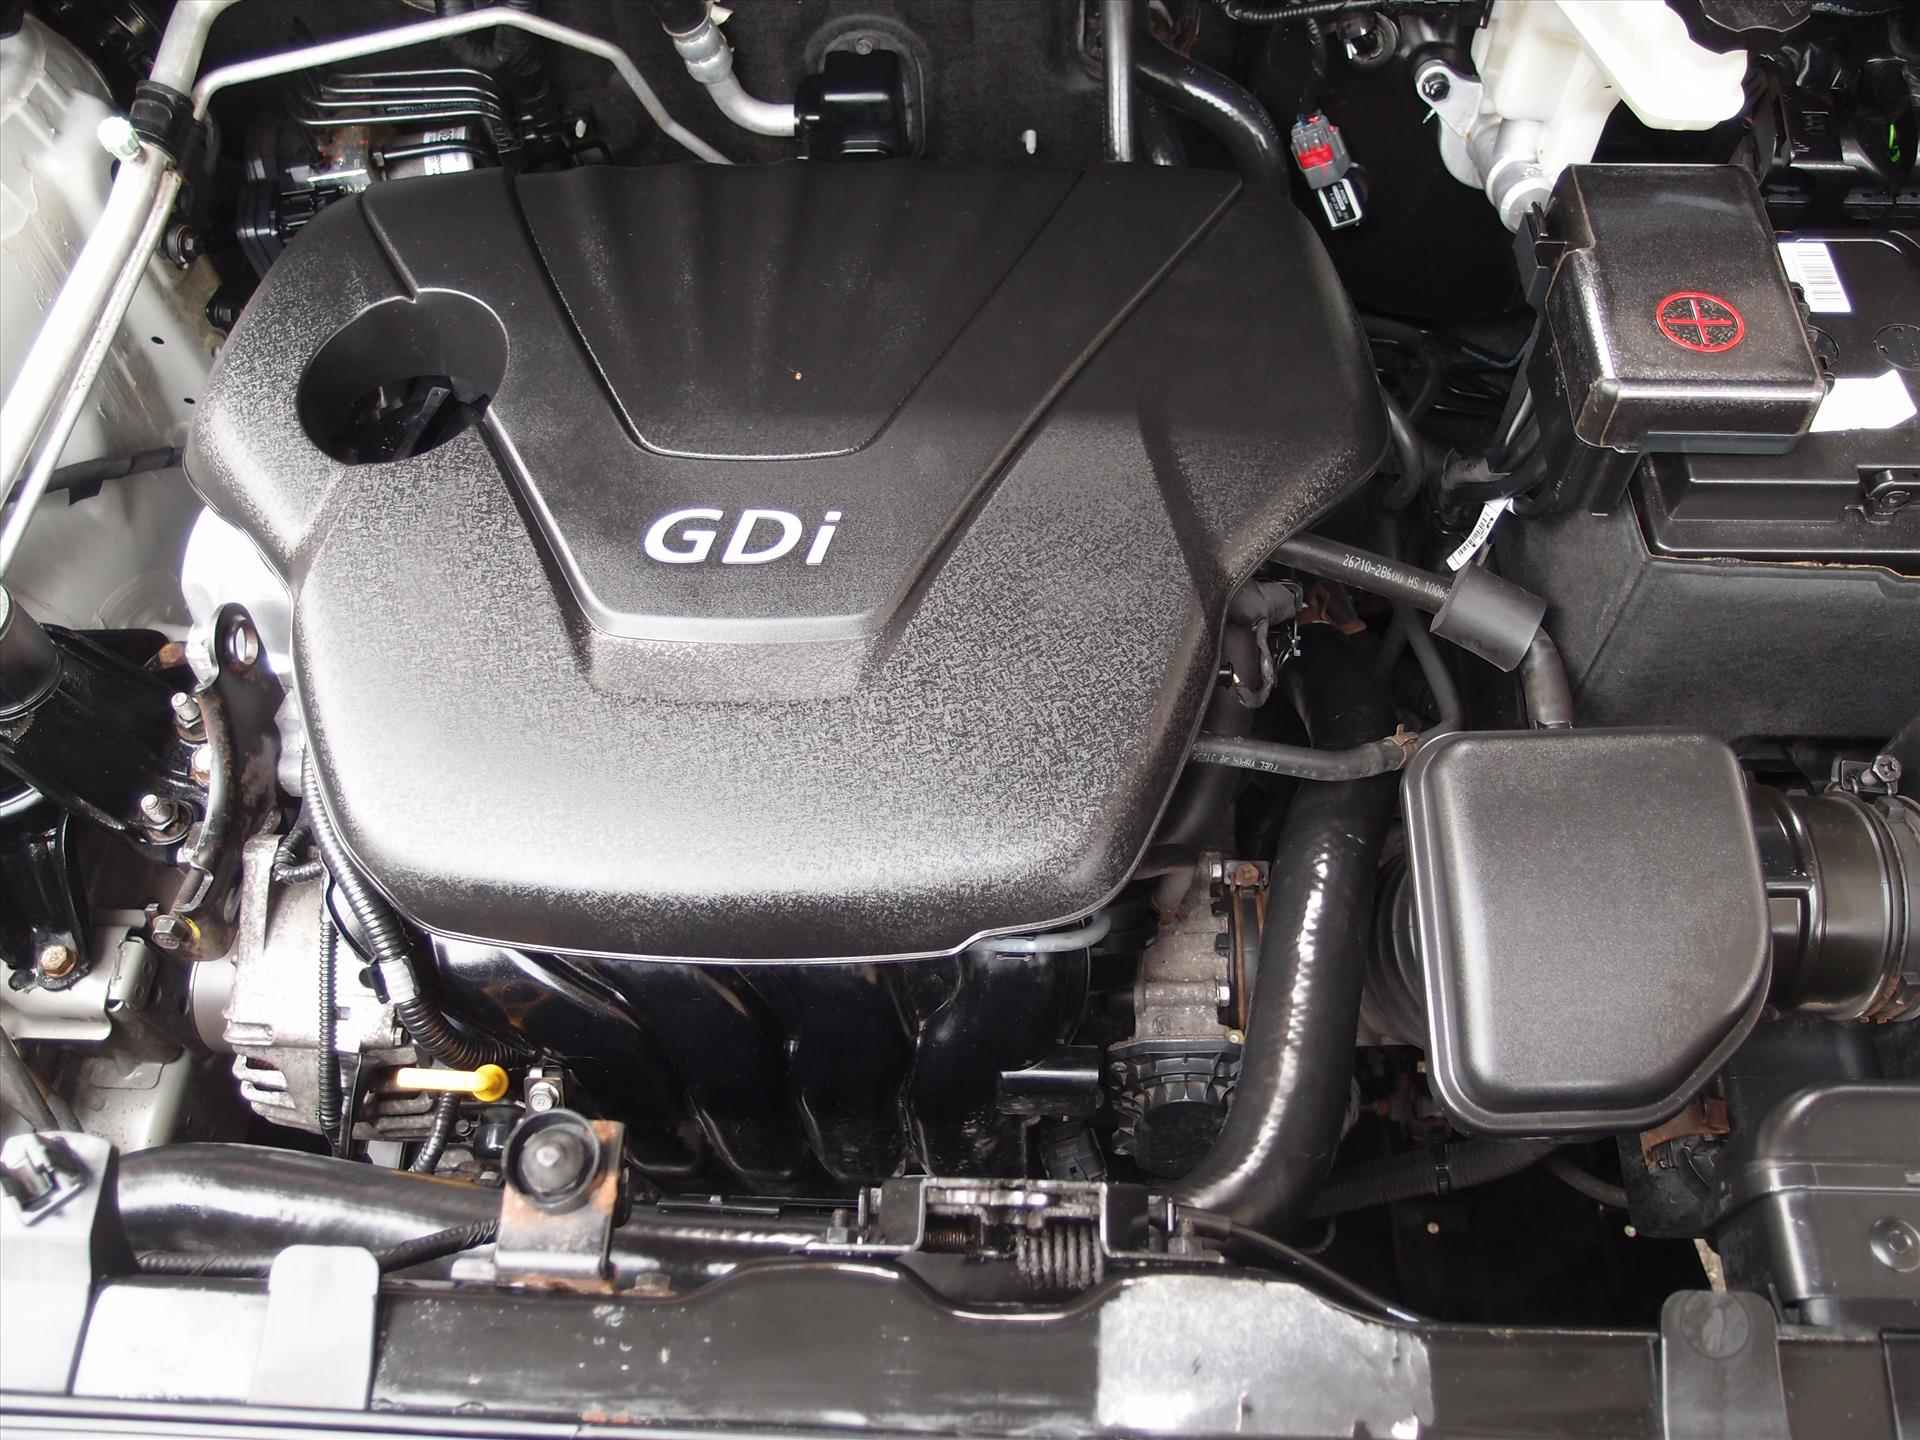 Kia Sportage 1.6 GDI 135pk Dynamics in  " New  " staat met nieuwe motor. - 17/22